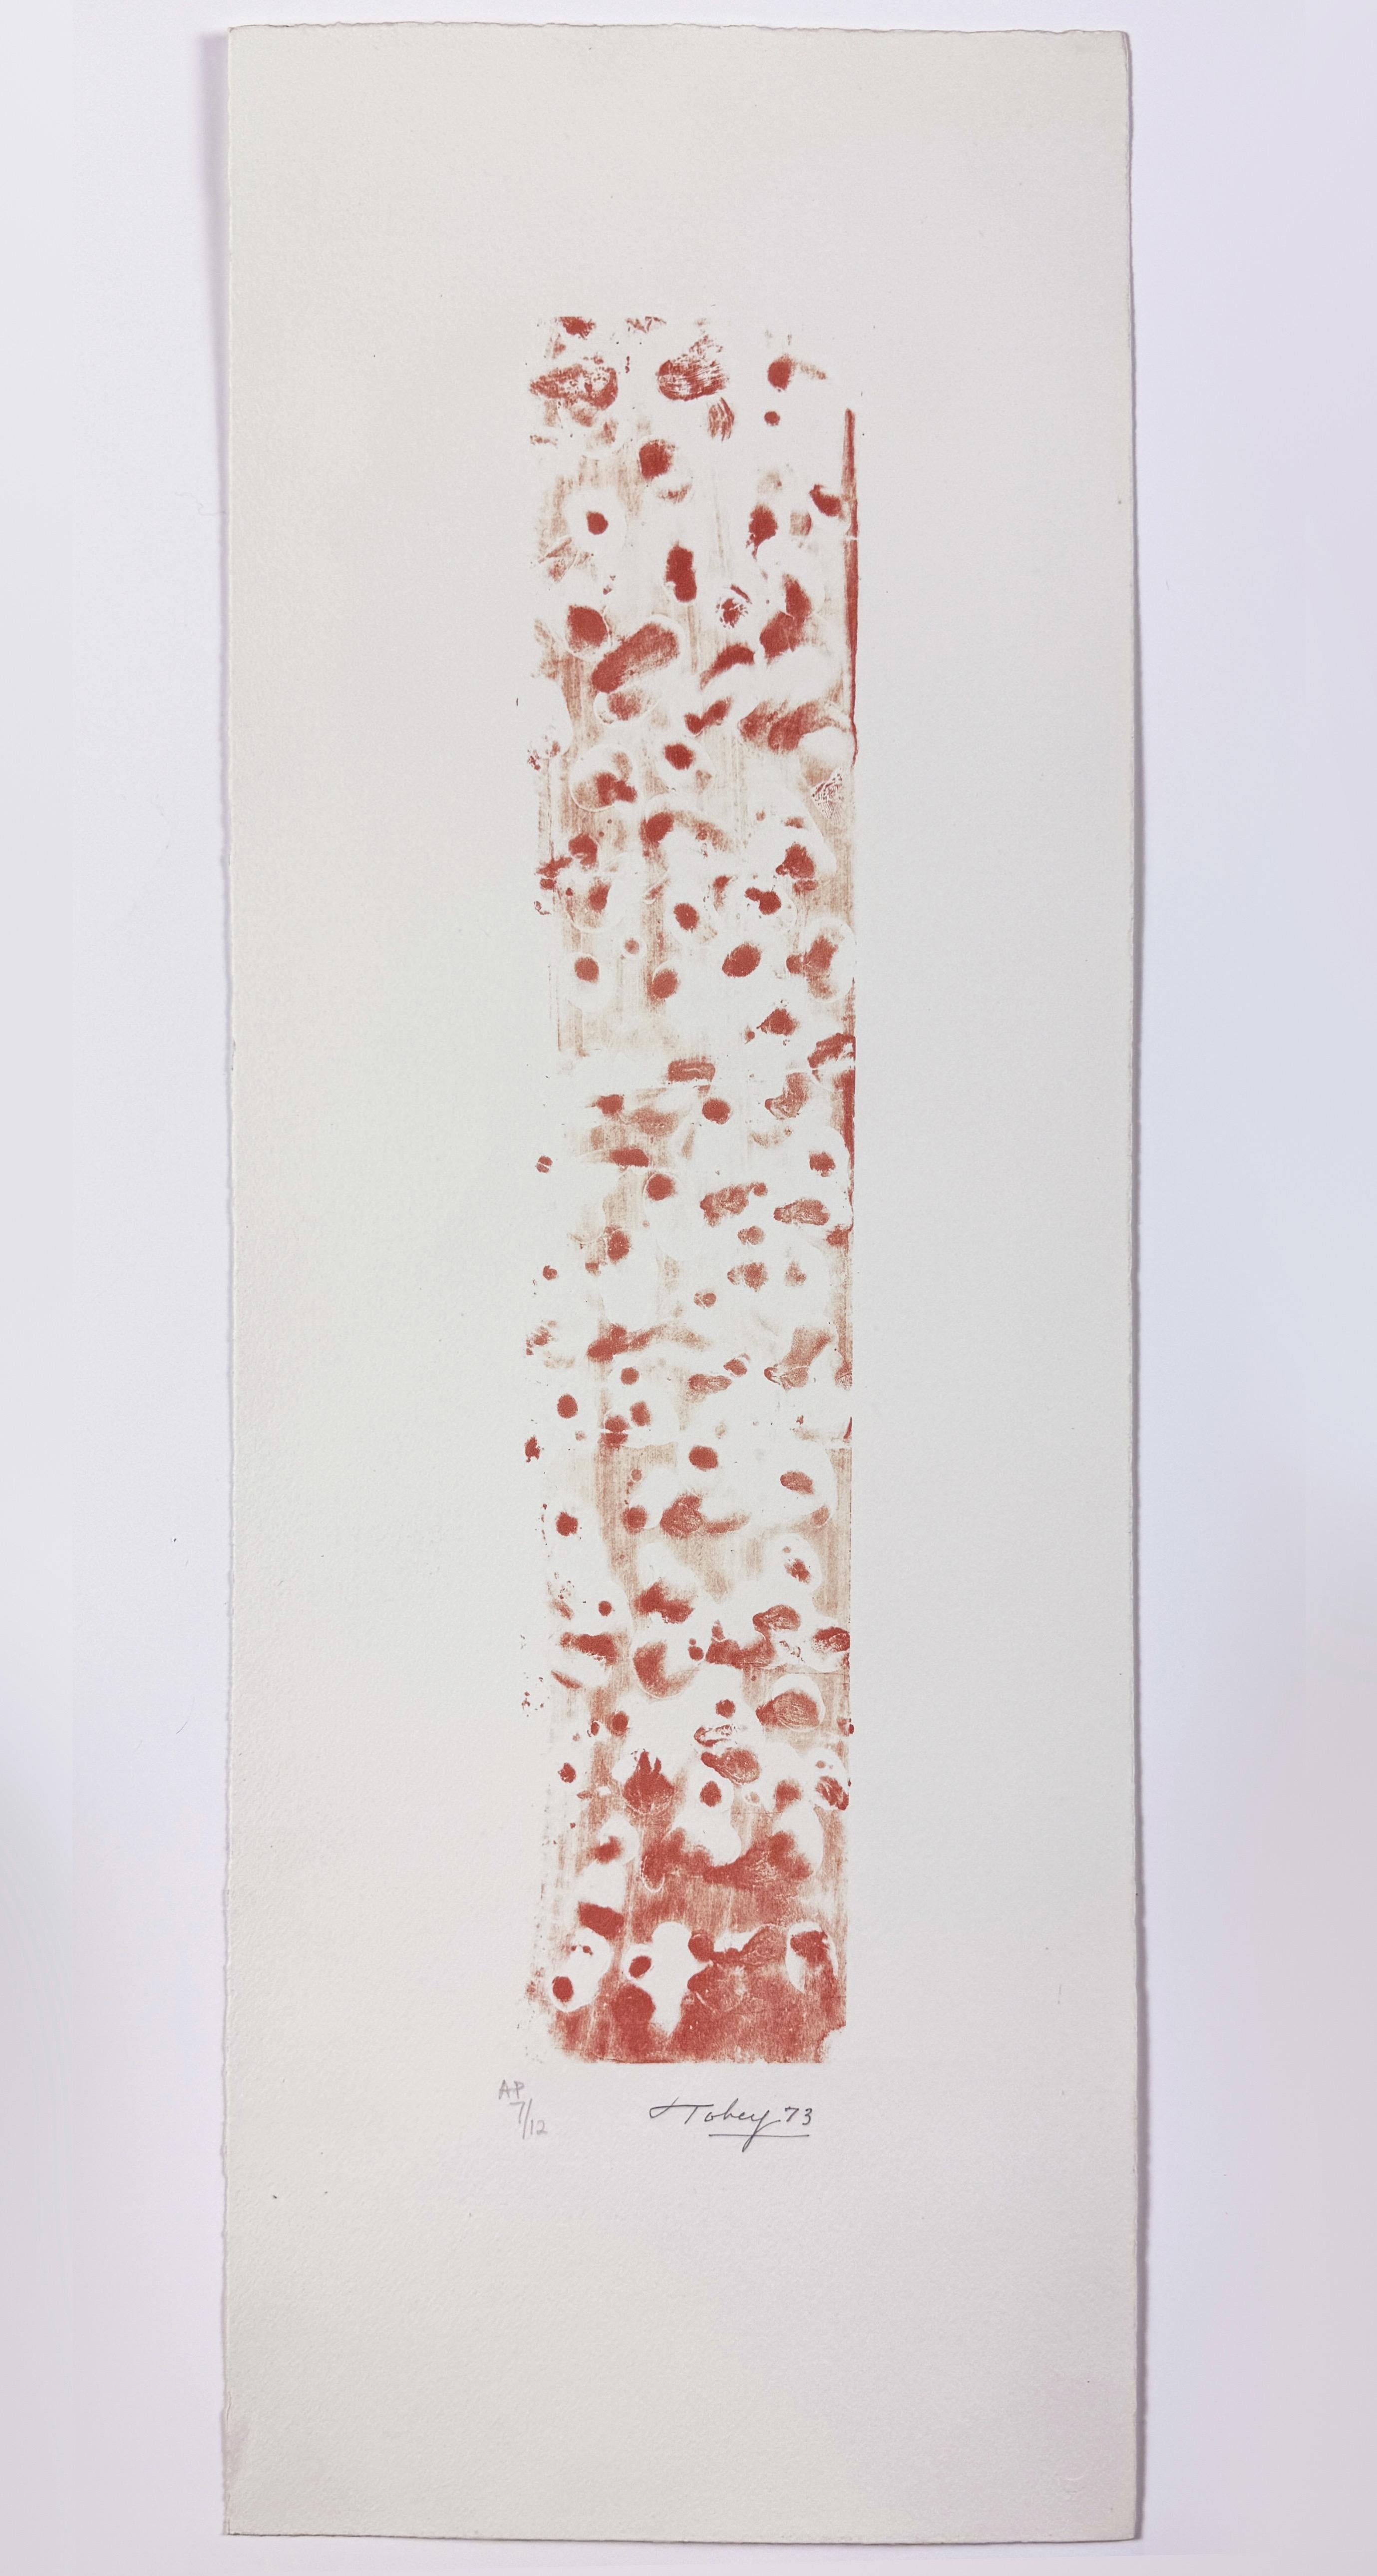 Une composition abstraite expressive et morose en rouge, avec les marques douces de Mark Tobey, inspirées de la calligraphie, qui rappellent l'eau et les bulles s'écoulant vers le haut.

Mark Tobey, Fragment sous-marin (rouge) 1973
feuille 26 15/16